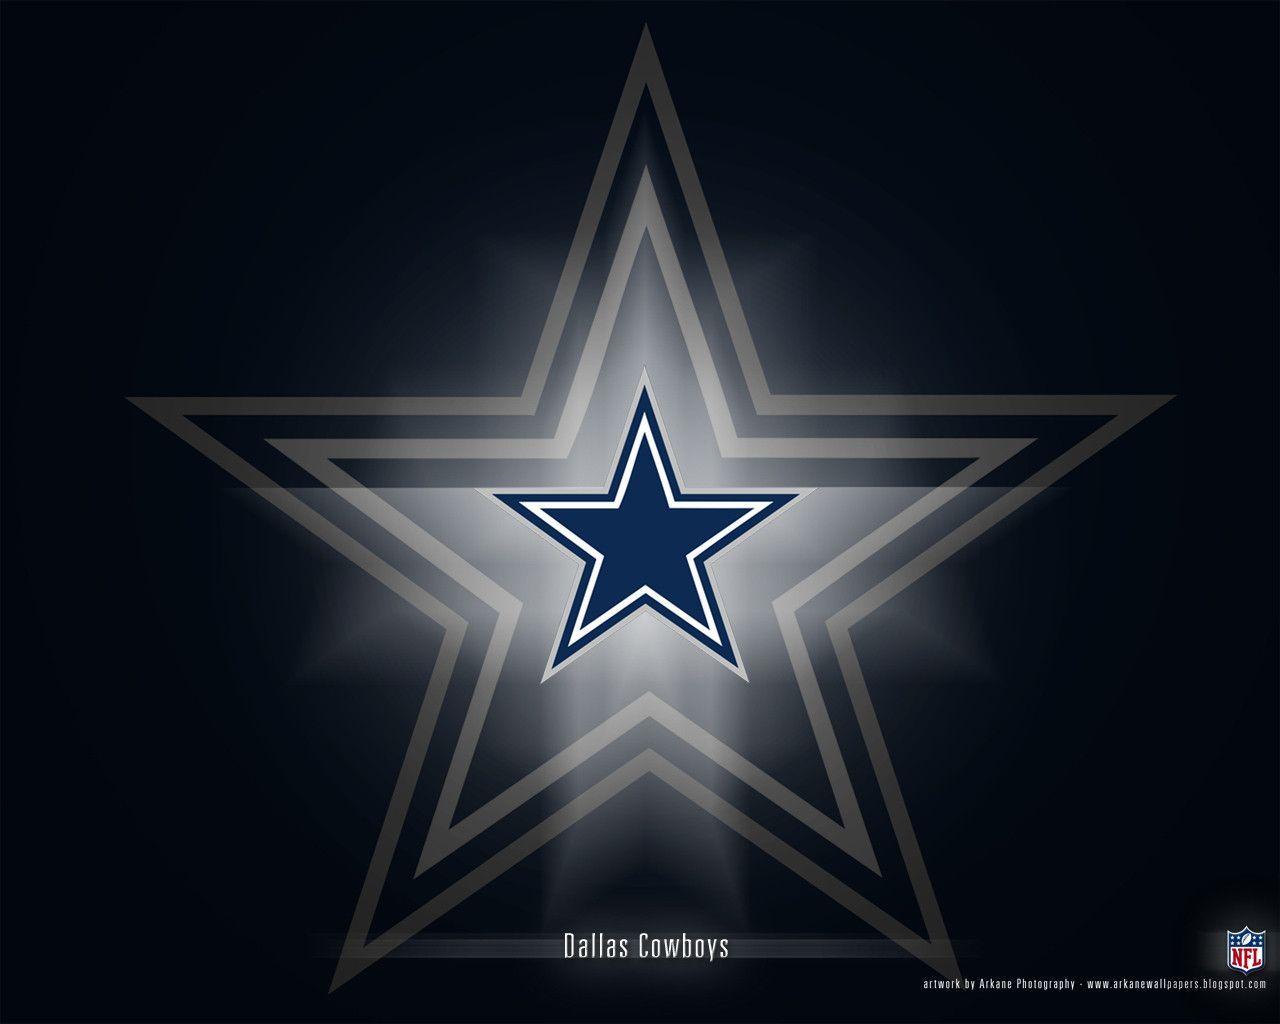 Dallas Cowboys Desktop Background HD 24668 Image. largepict